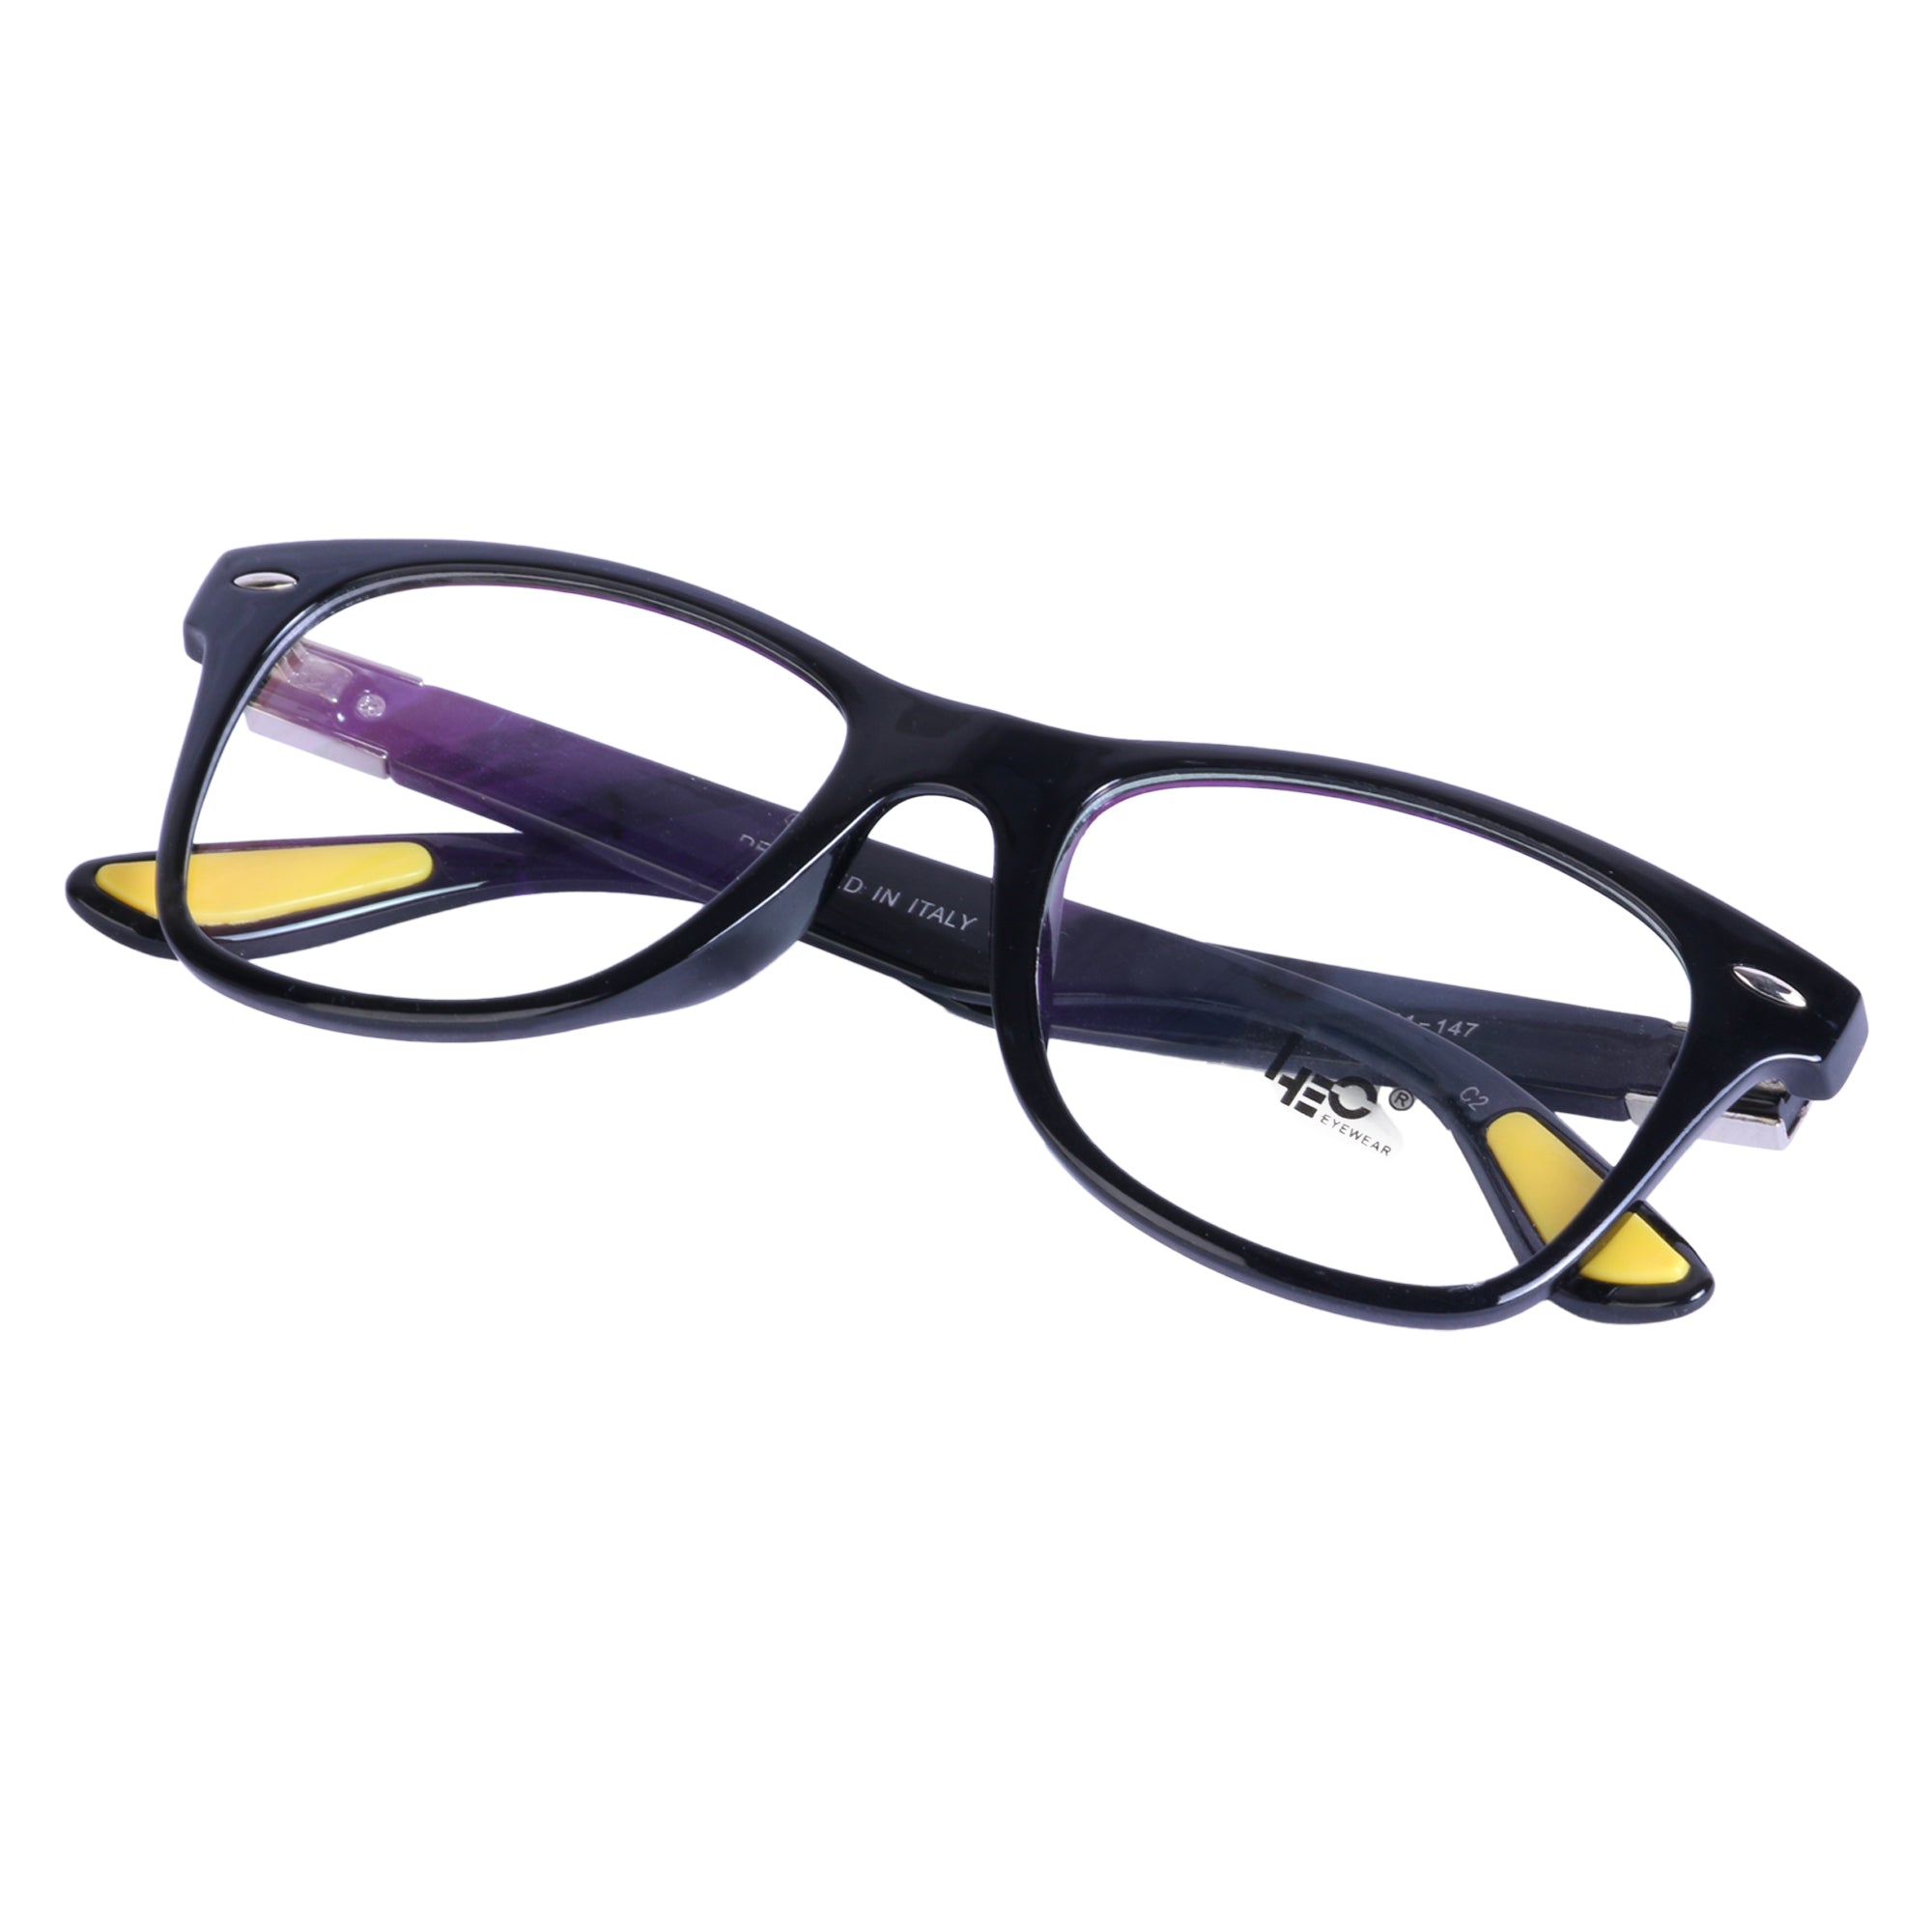 BLACK Wayfarer Rimmed Eyeglasses - L121